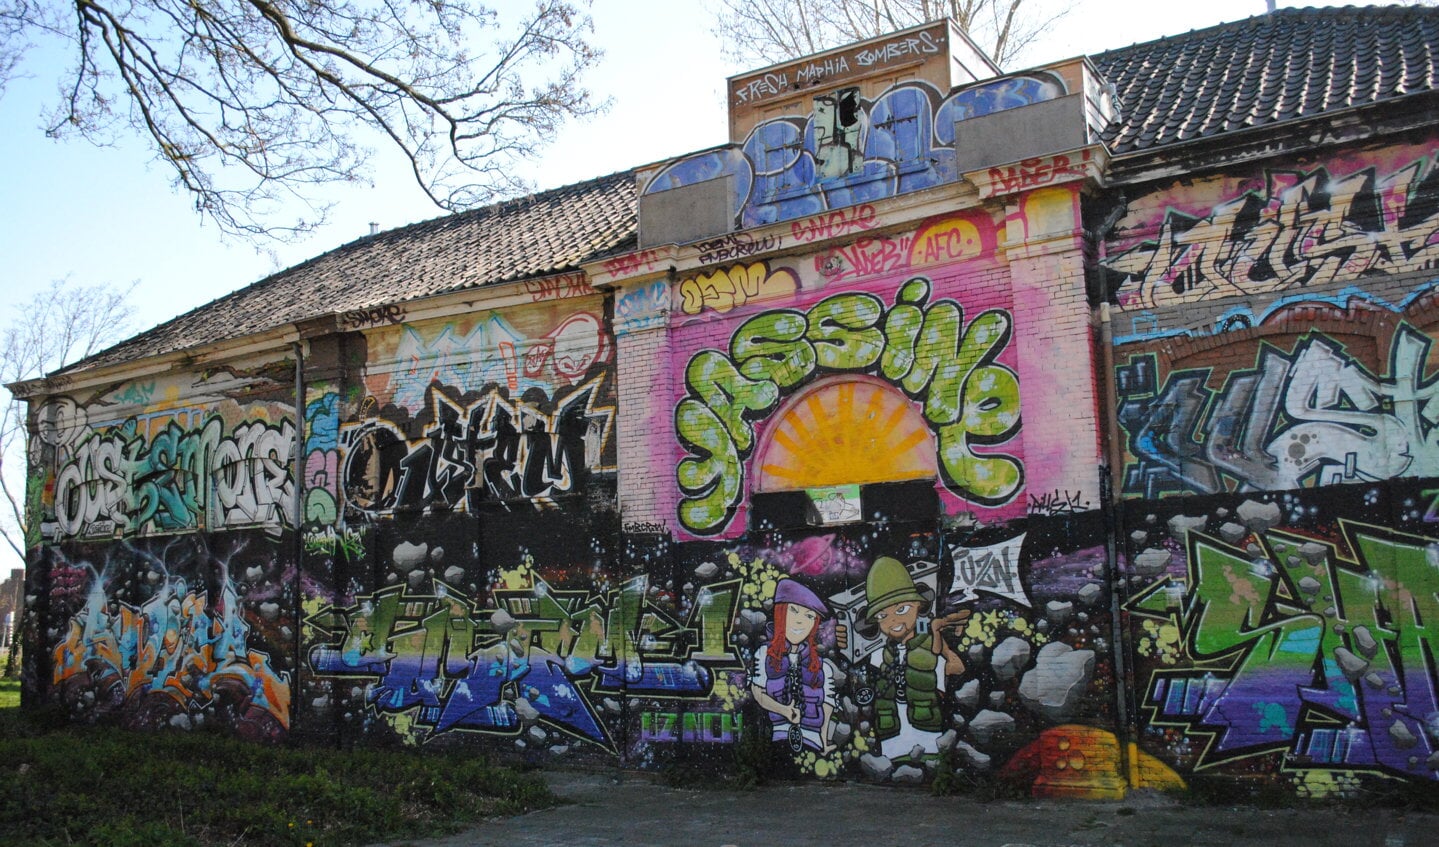 Het ijkgebouw zoals het er tussen 2009 en 2014 uitzag: vervallen en bedekt met graffiti. Bron: Collectie Regionaal Archief Alkmaar